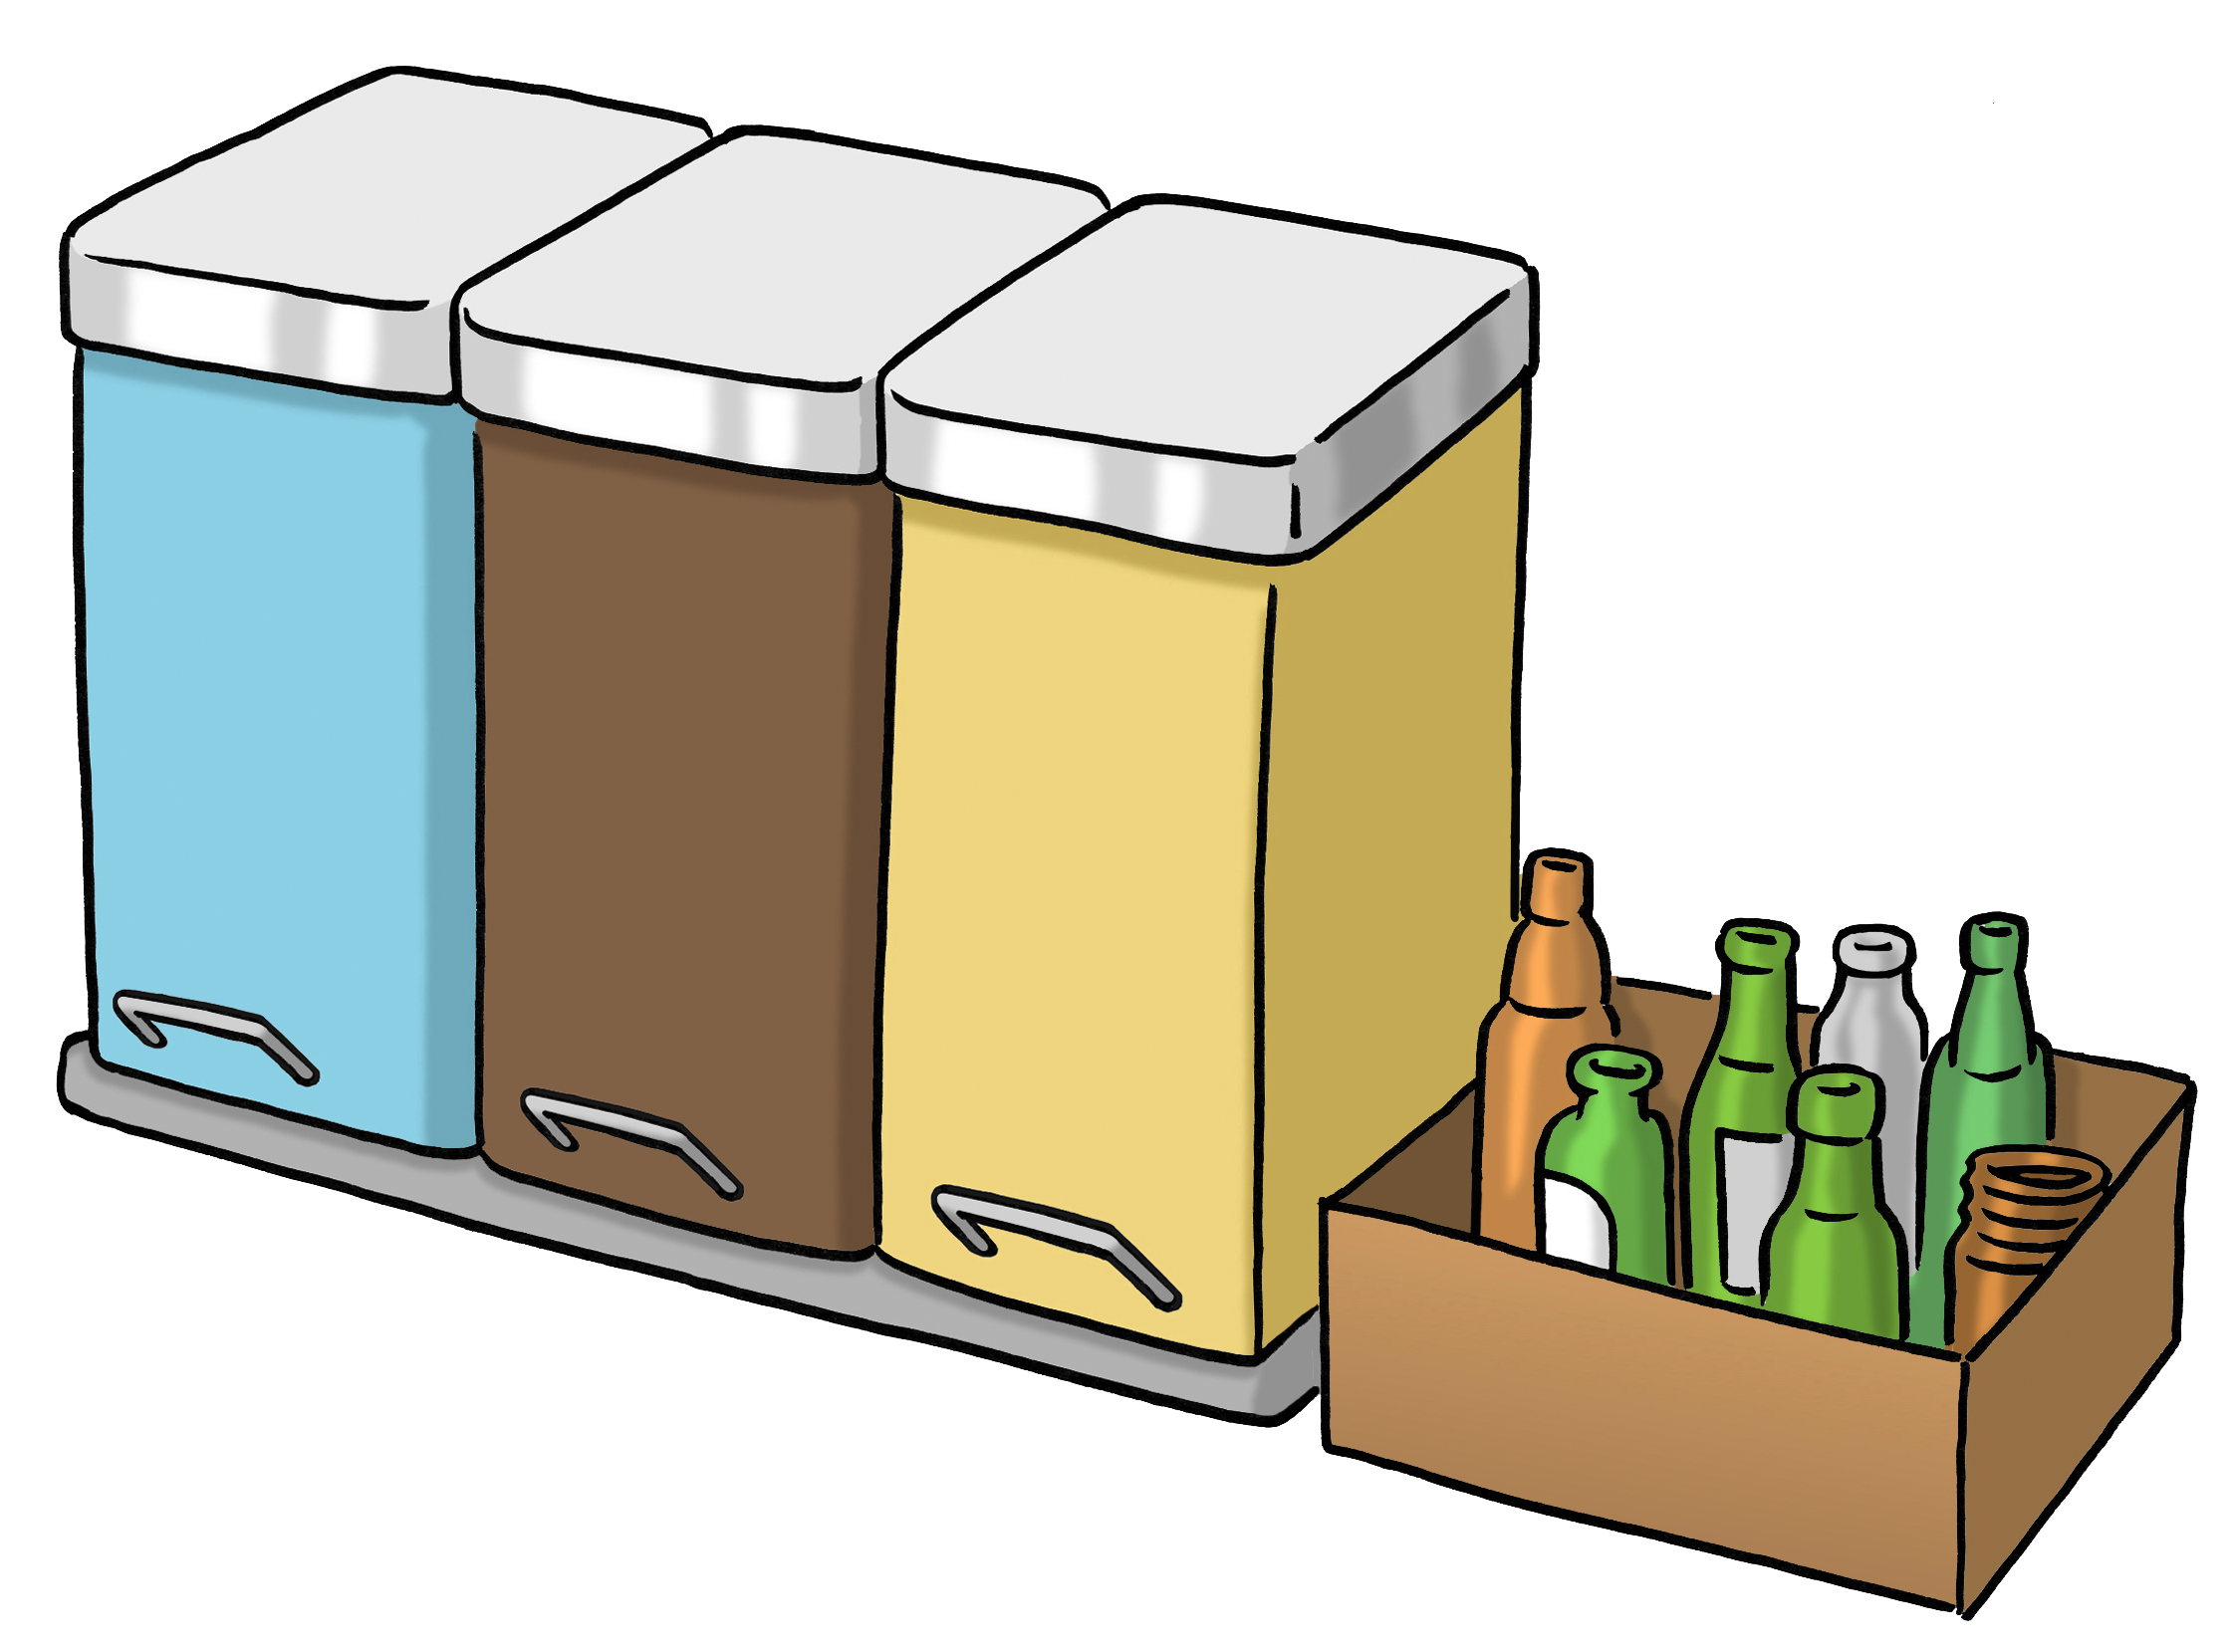 Leichte Sprache Bild: eine blaue, braune und gelbe Mülltonne, daneben ein offener Karton mit Altglas